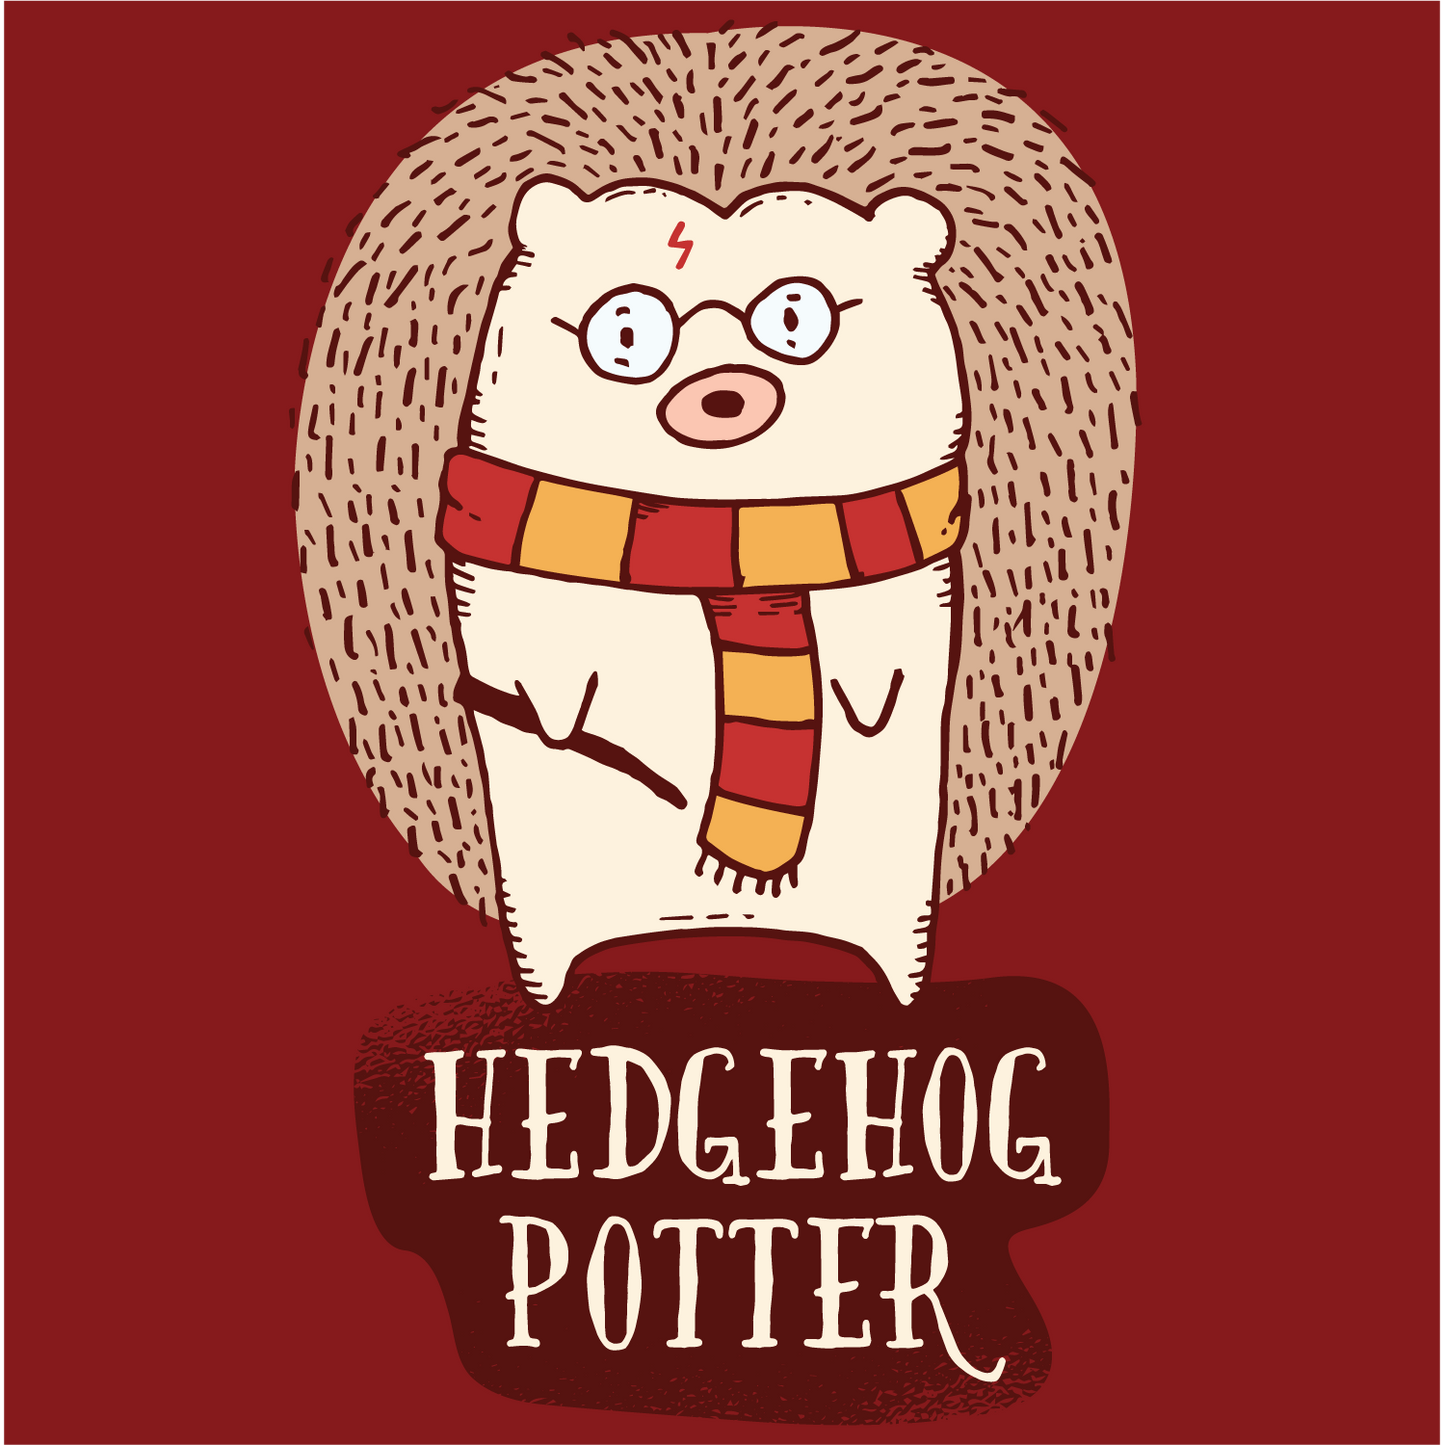 Hedgehog Potter